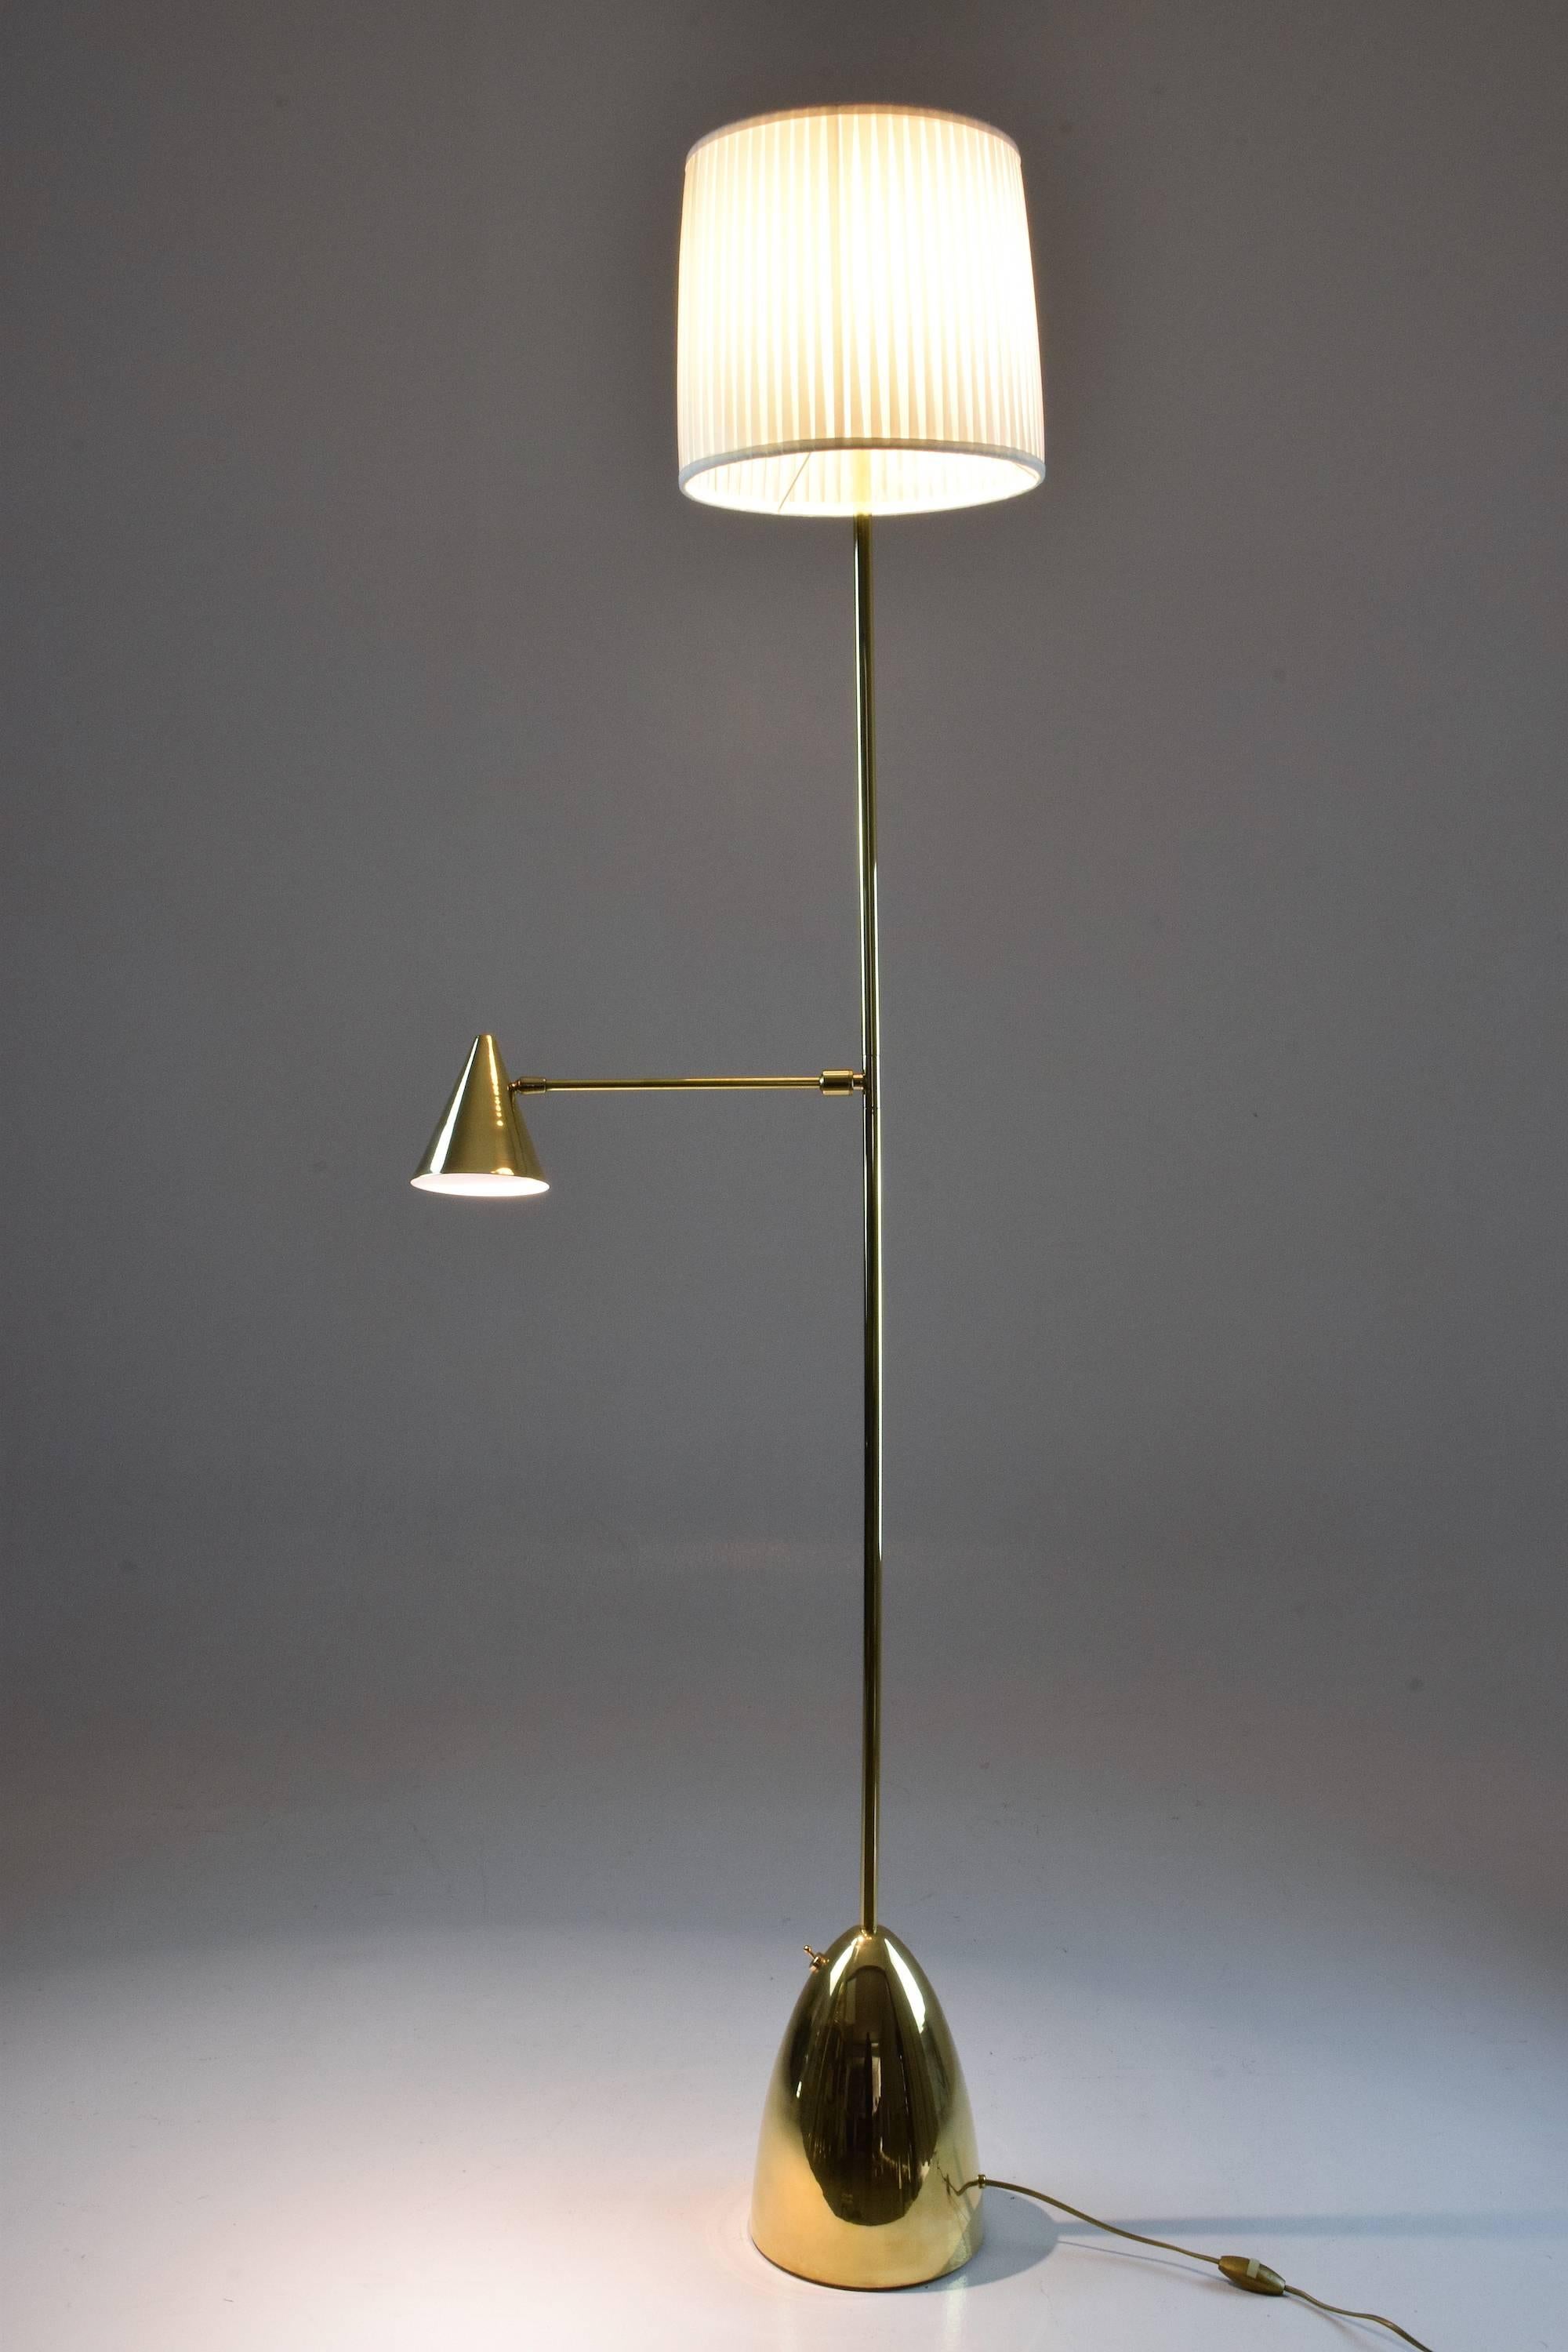 Portuguese De-Light F1 Contemporary Double Light Brass Floor Lamp, Flow Collection For Sale